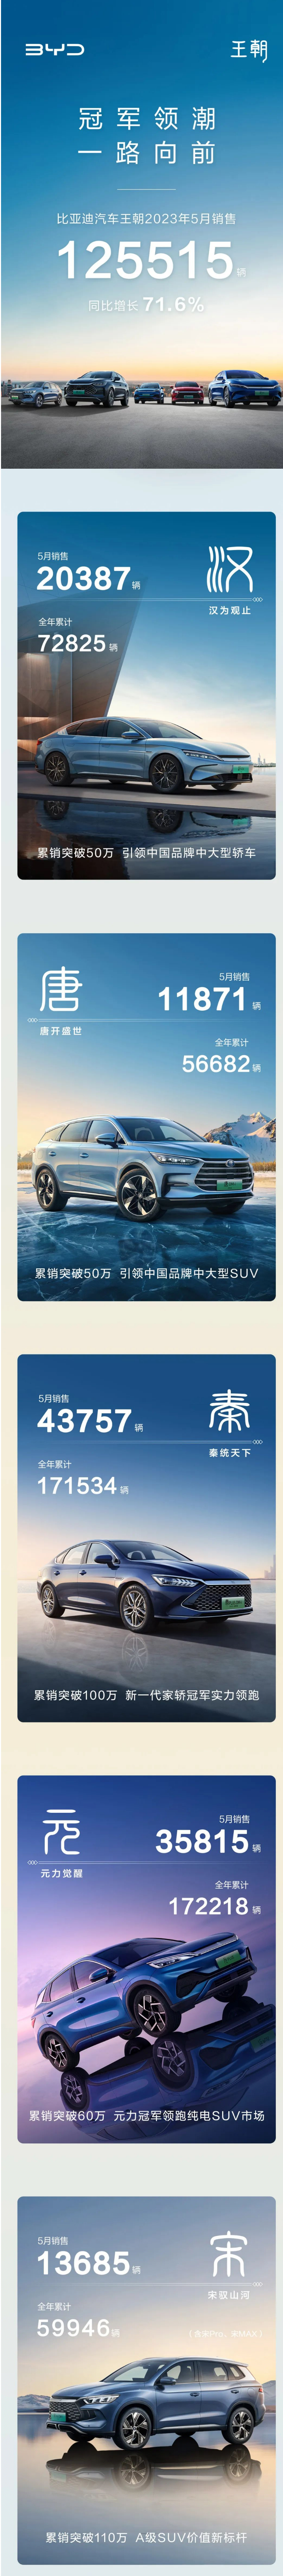 比亚迪王朝车型5月销量125515辆 其中汉家族销量20387辆